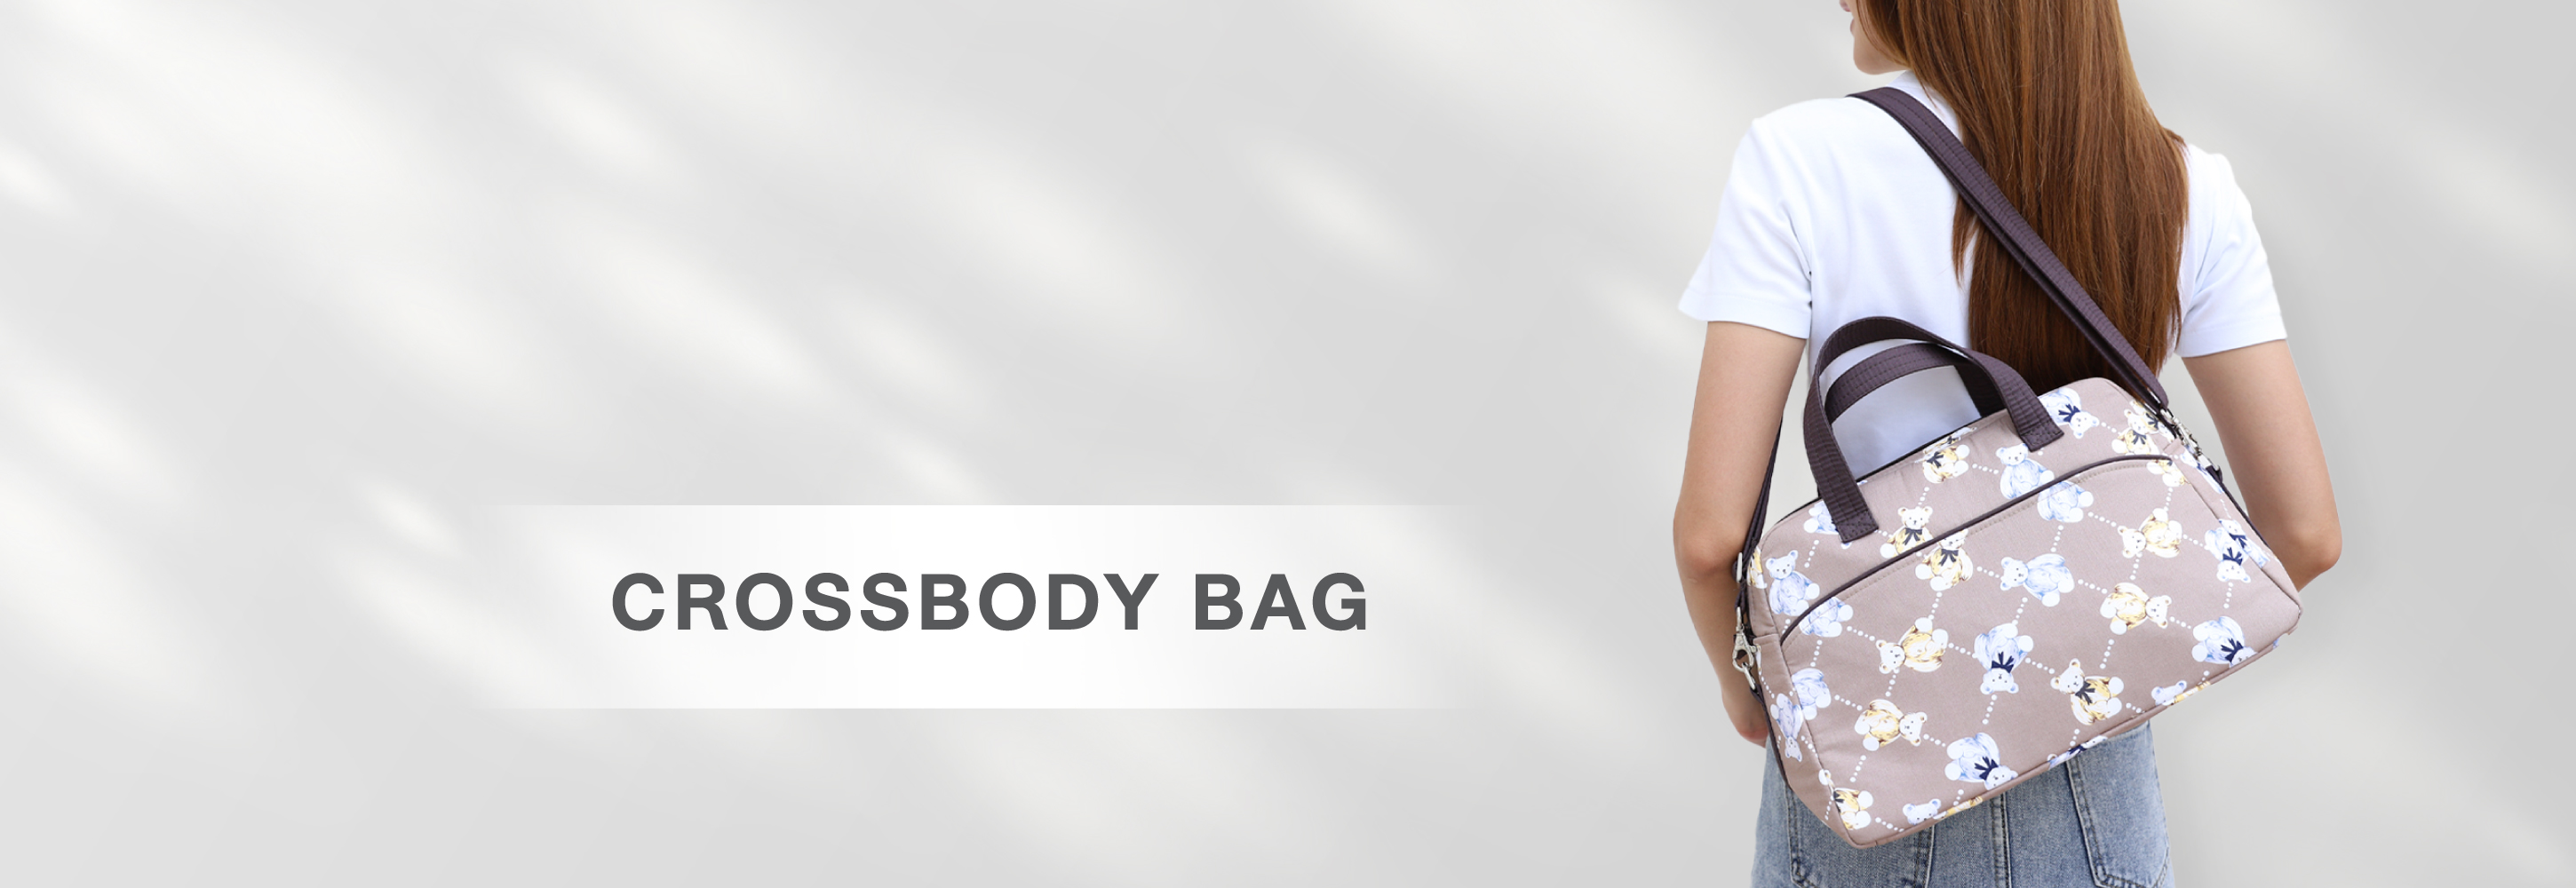 NaRaYa Be Simple Crossbody Bag